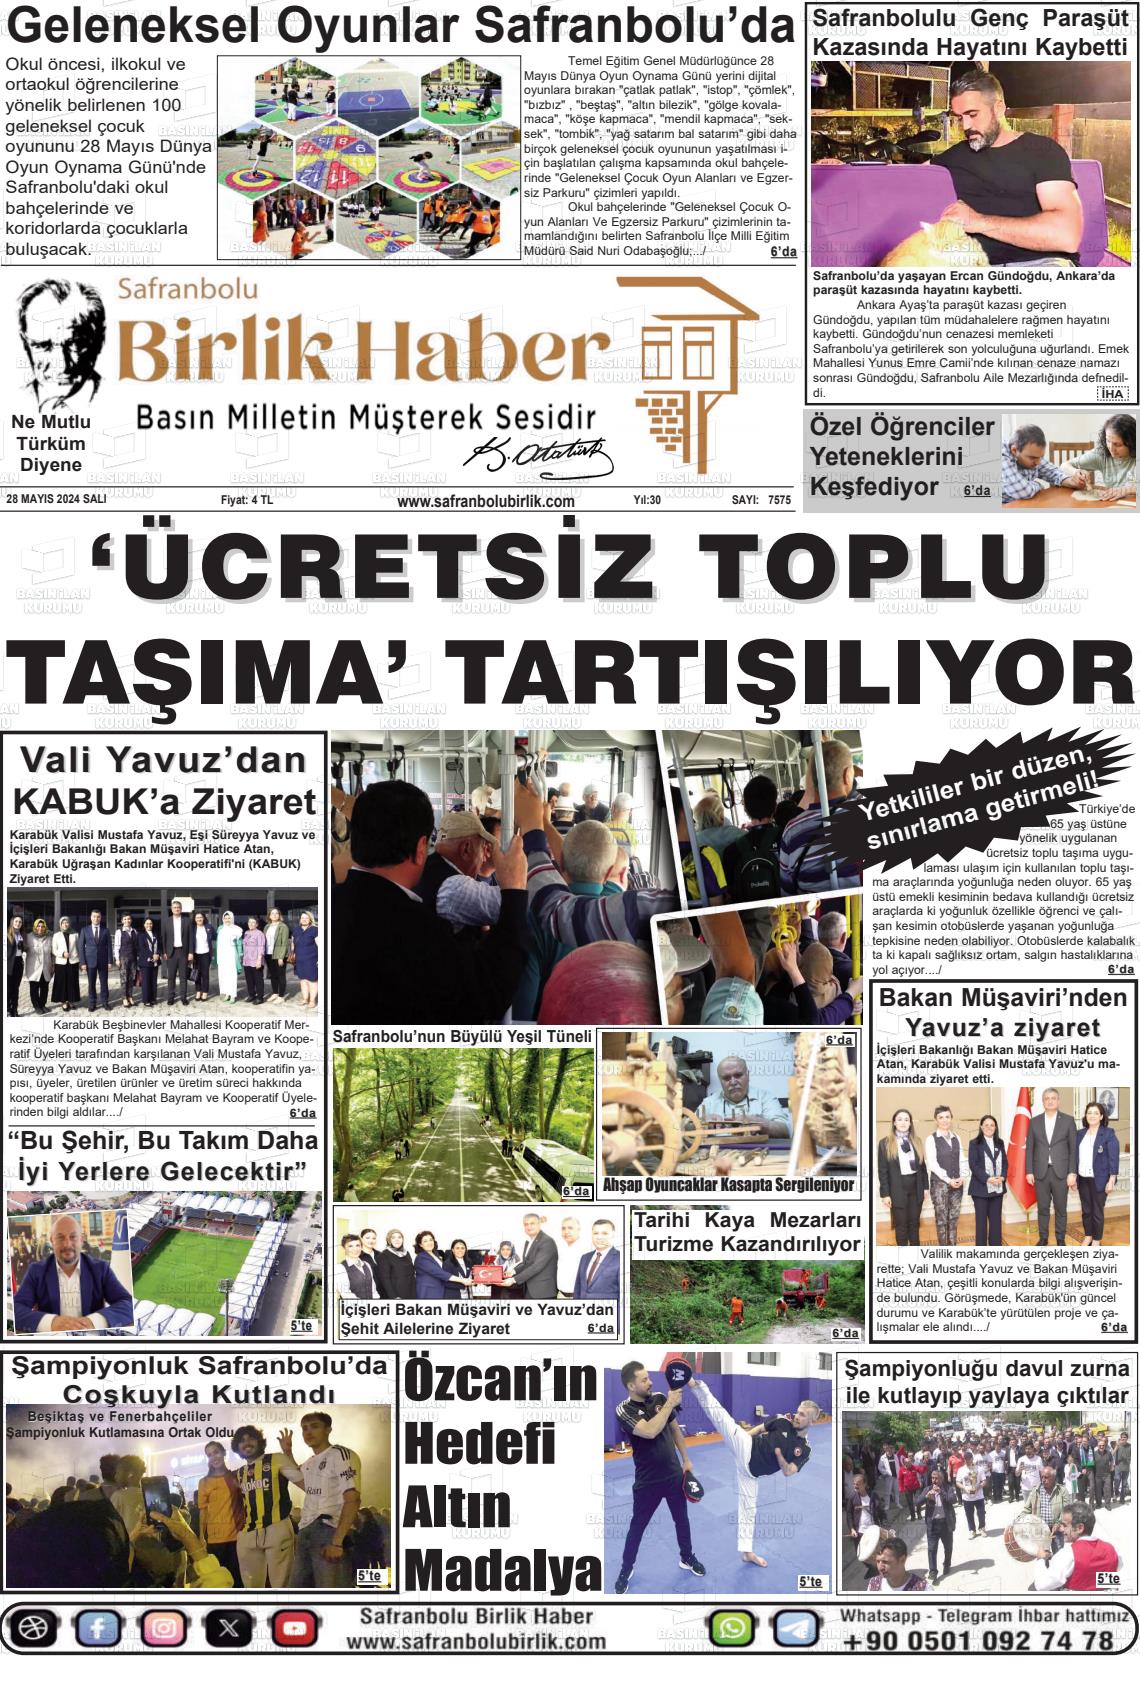 SAFRANBOLU BİRLİK HABER Gazetesi